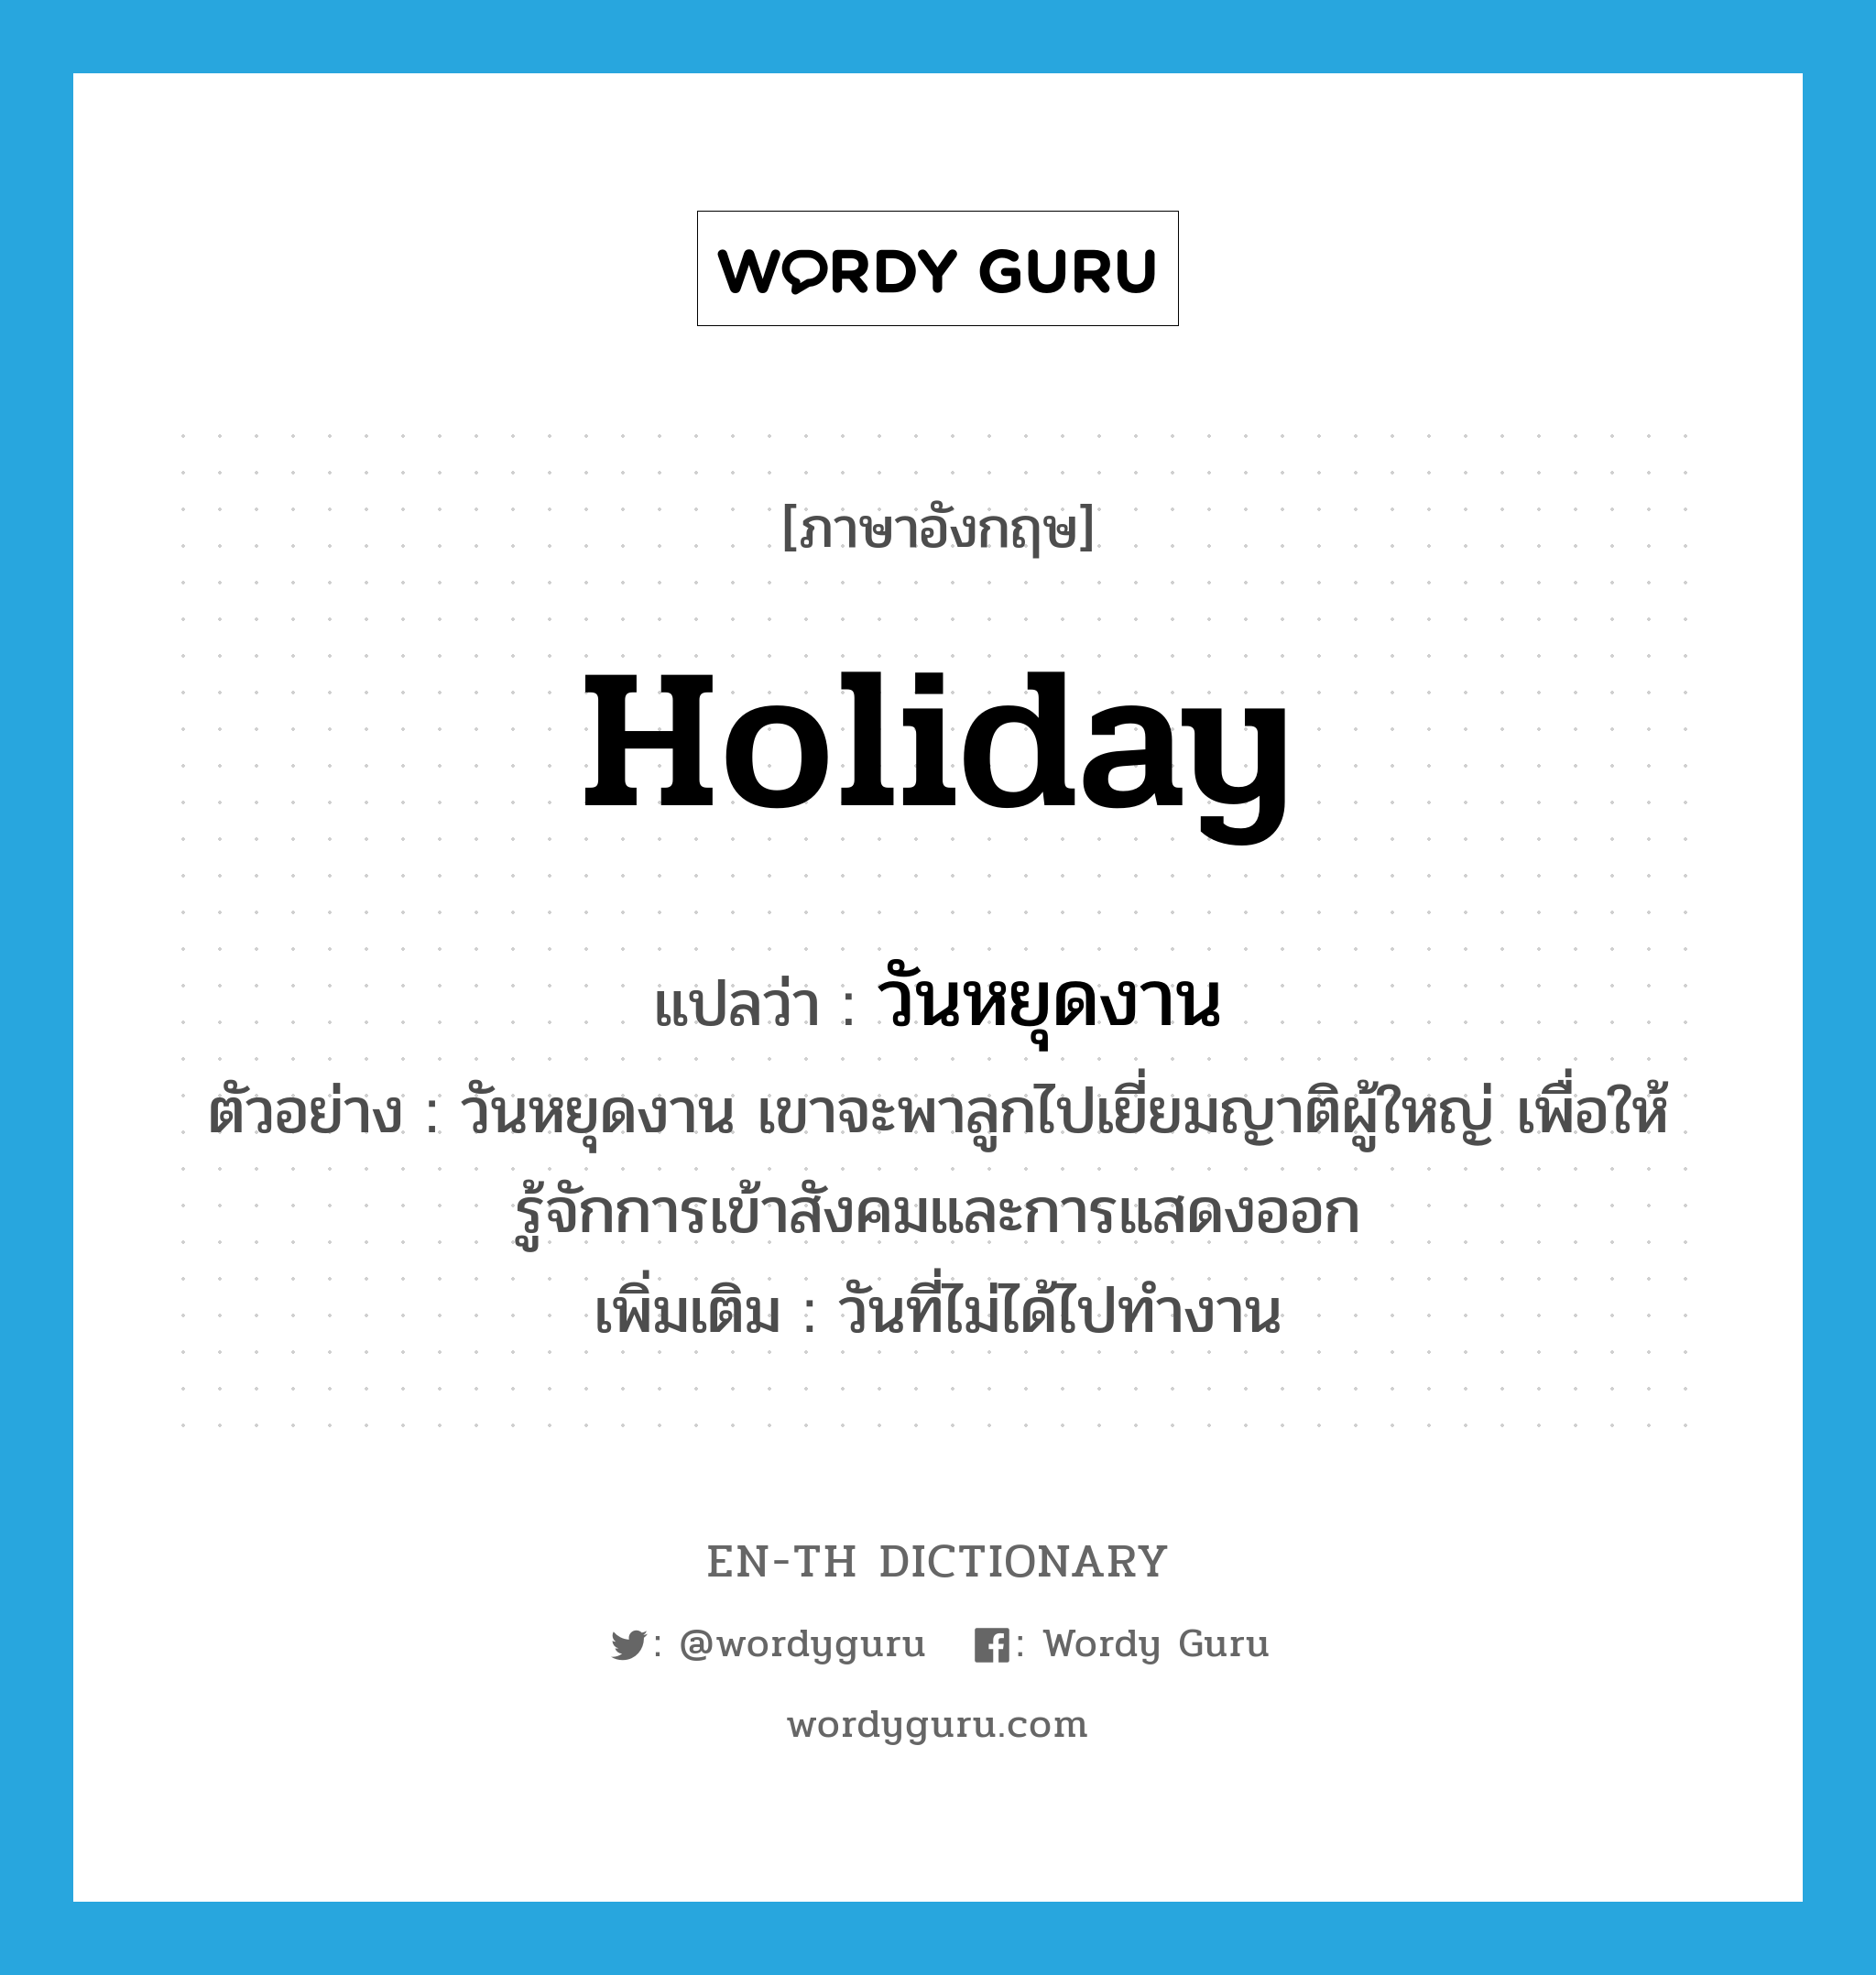 Holiday แปลว่า? | Wordy Guru